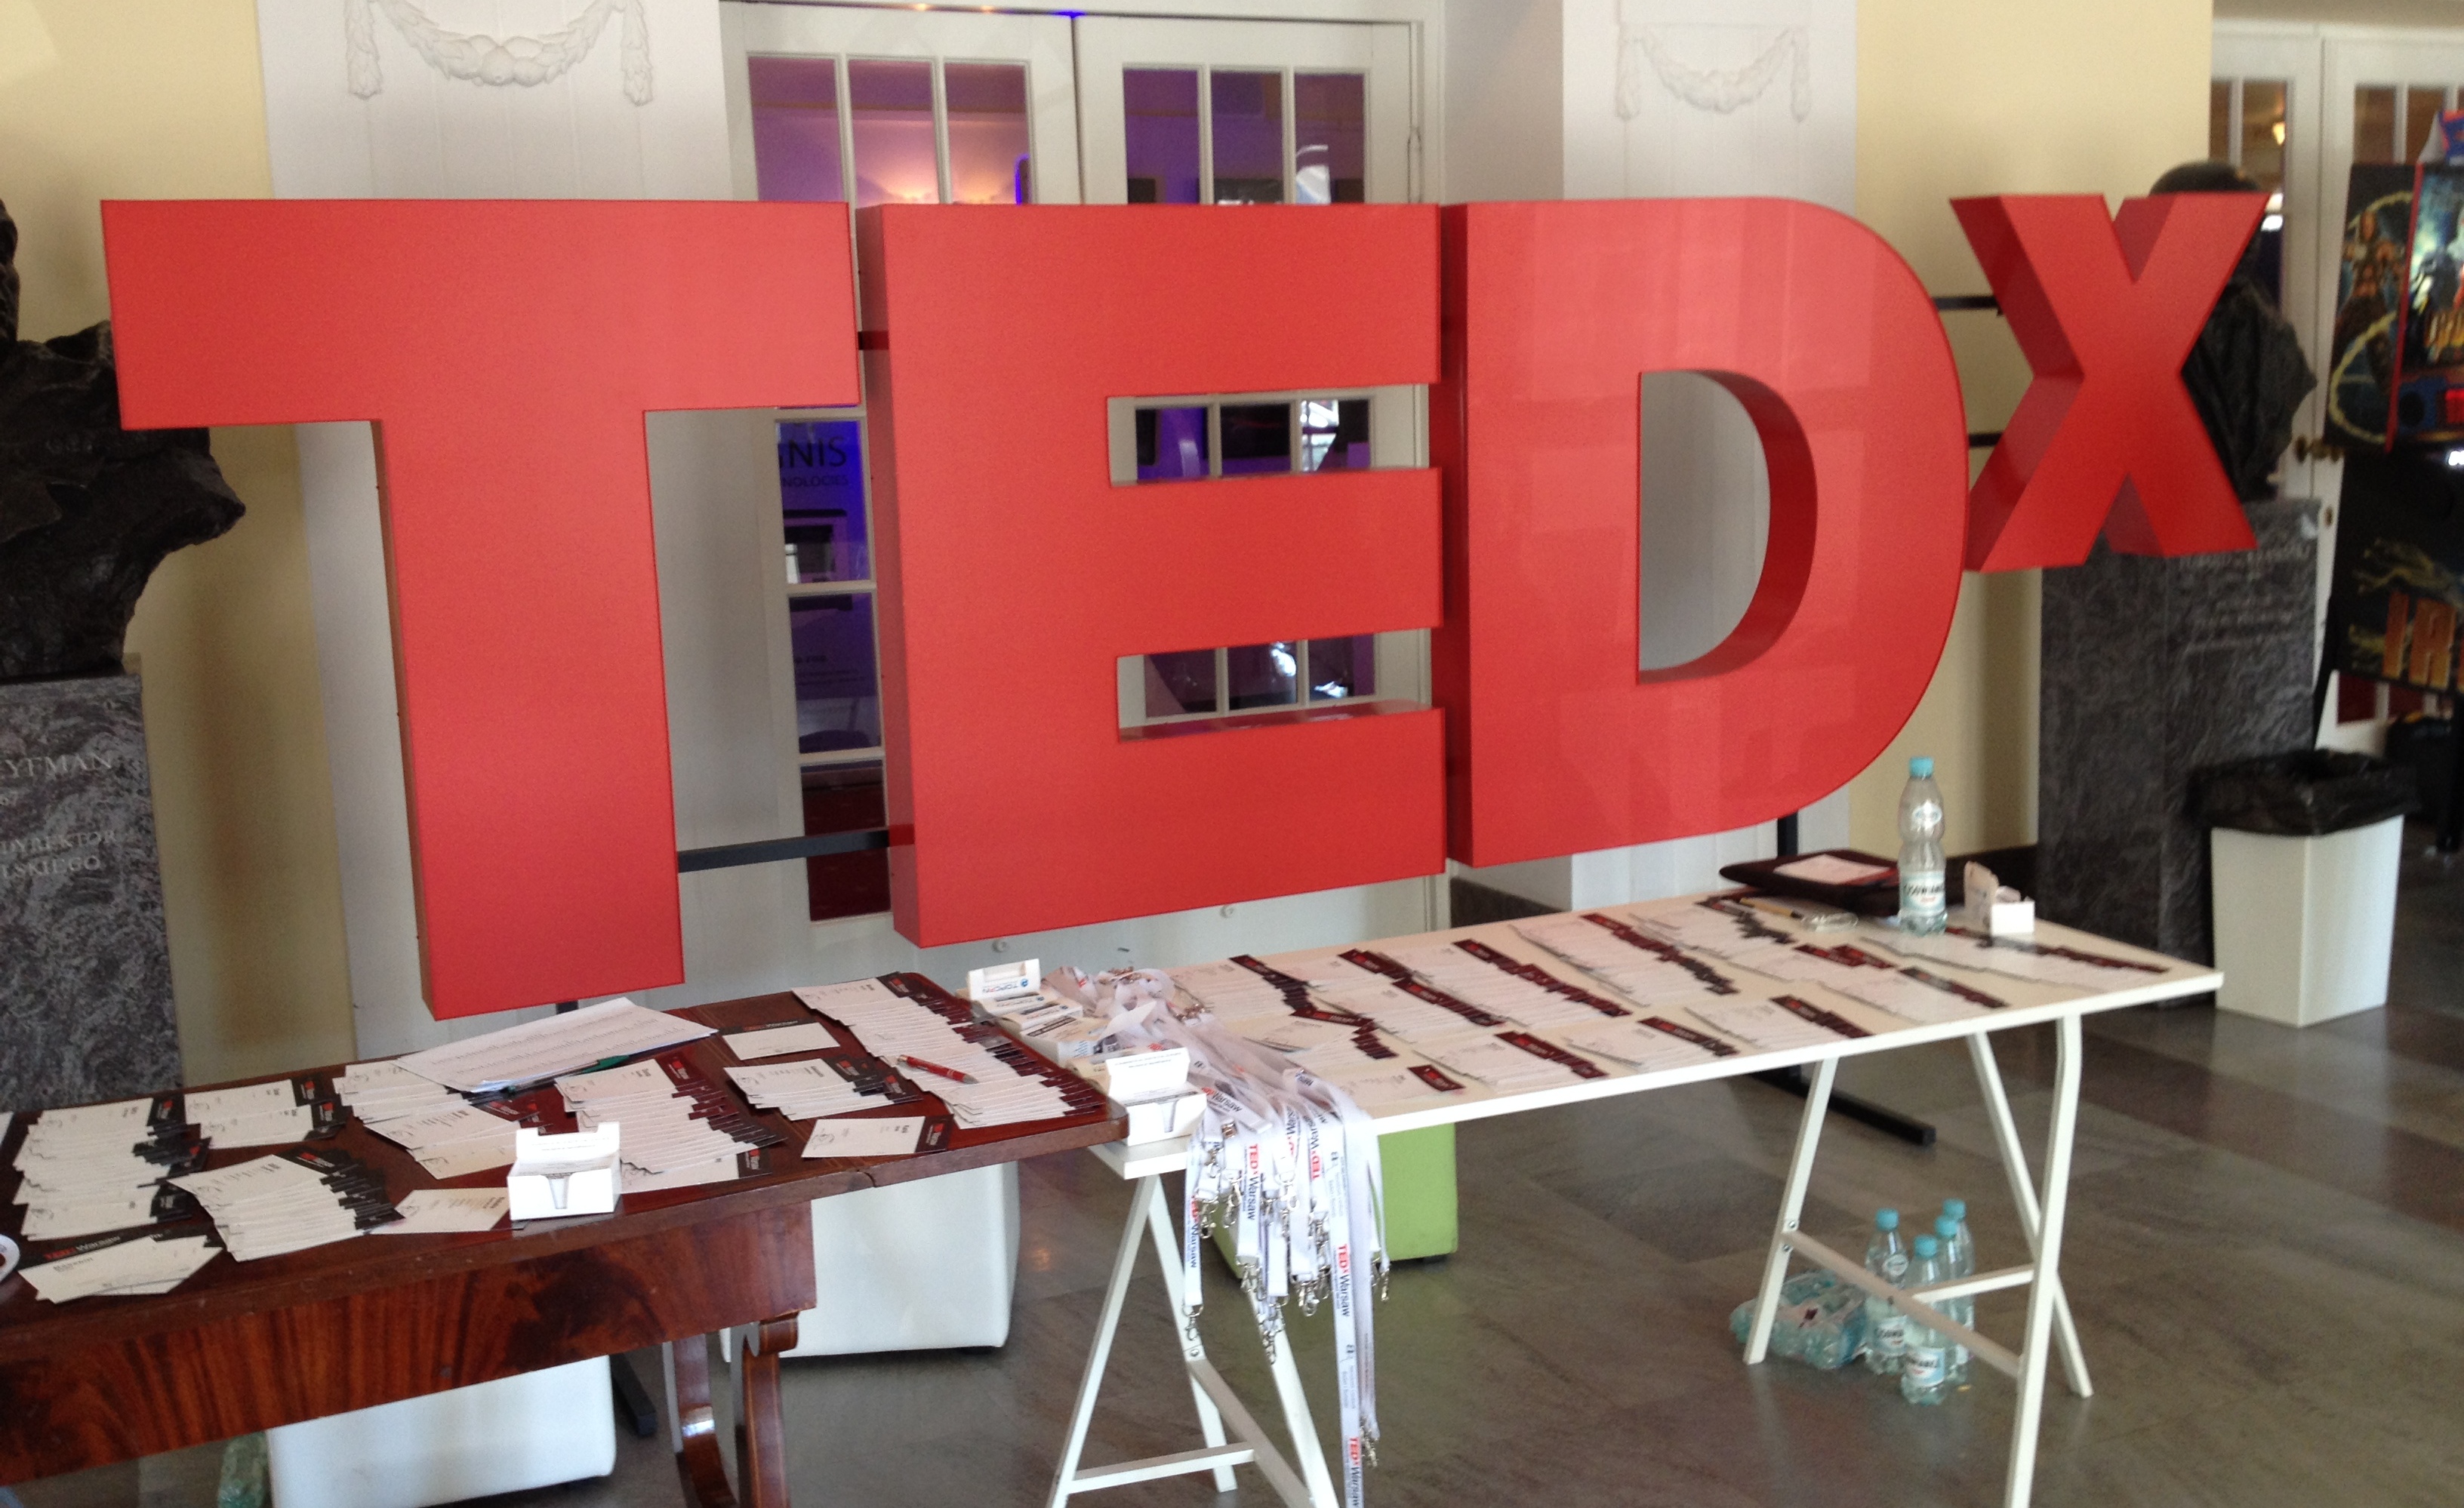 O trzmielach, nanocząsteczkach i biegu przez pustynię – relacja z TEDx Warsaw konferencja mediarun com